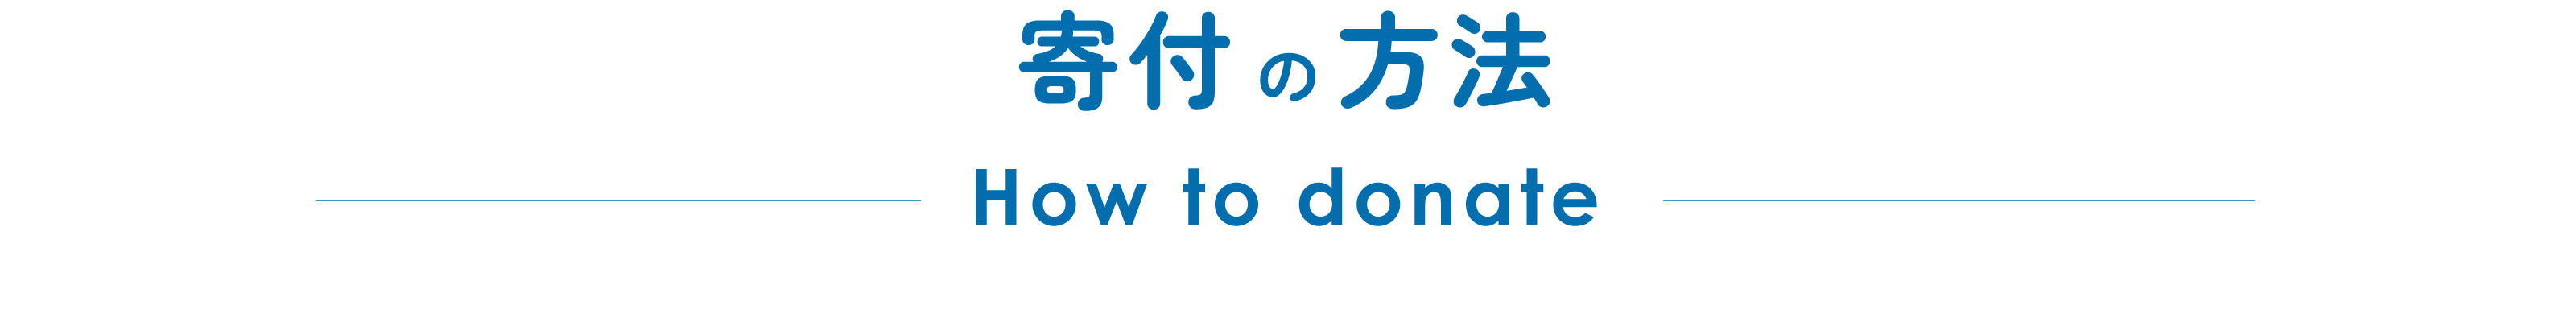 寄付の方法 How to donate